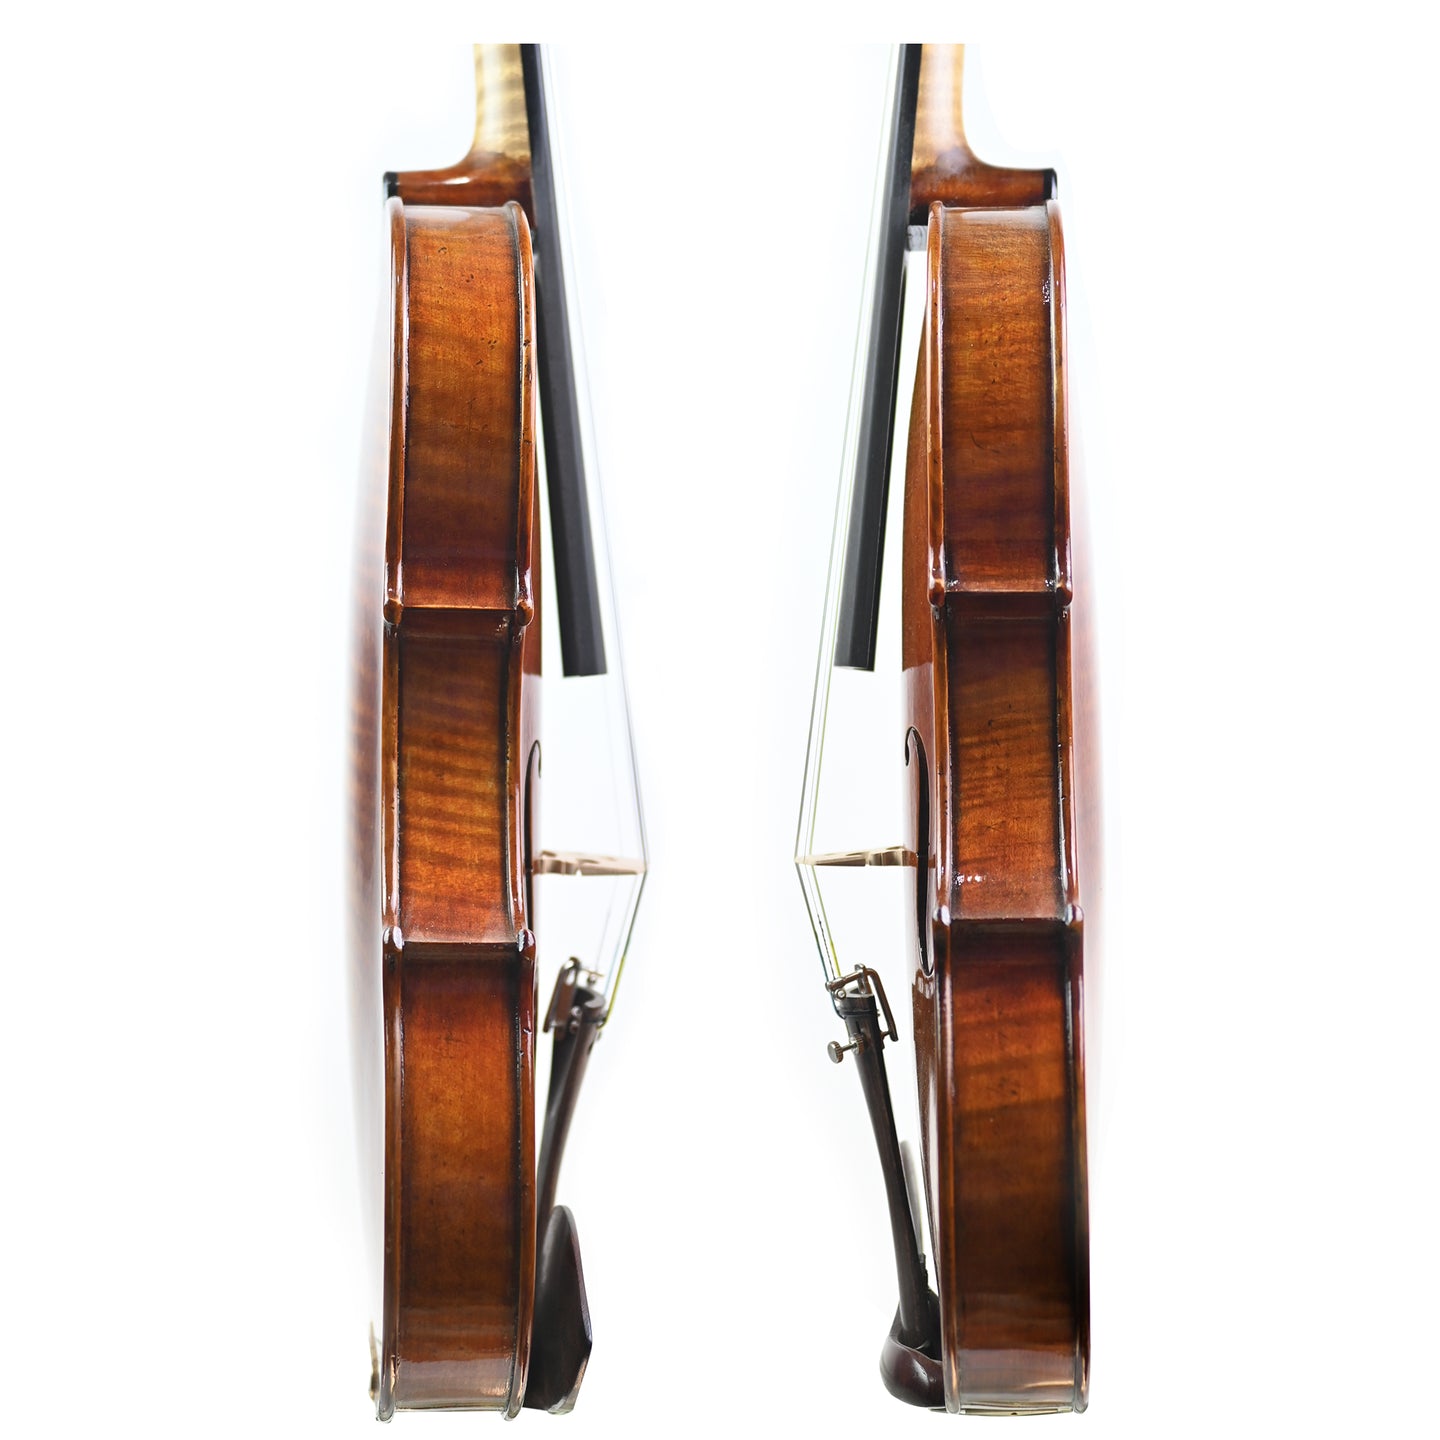 7016 full size violin rib